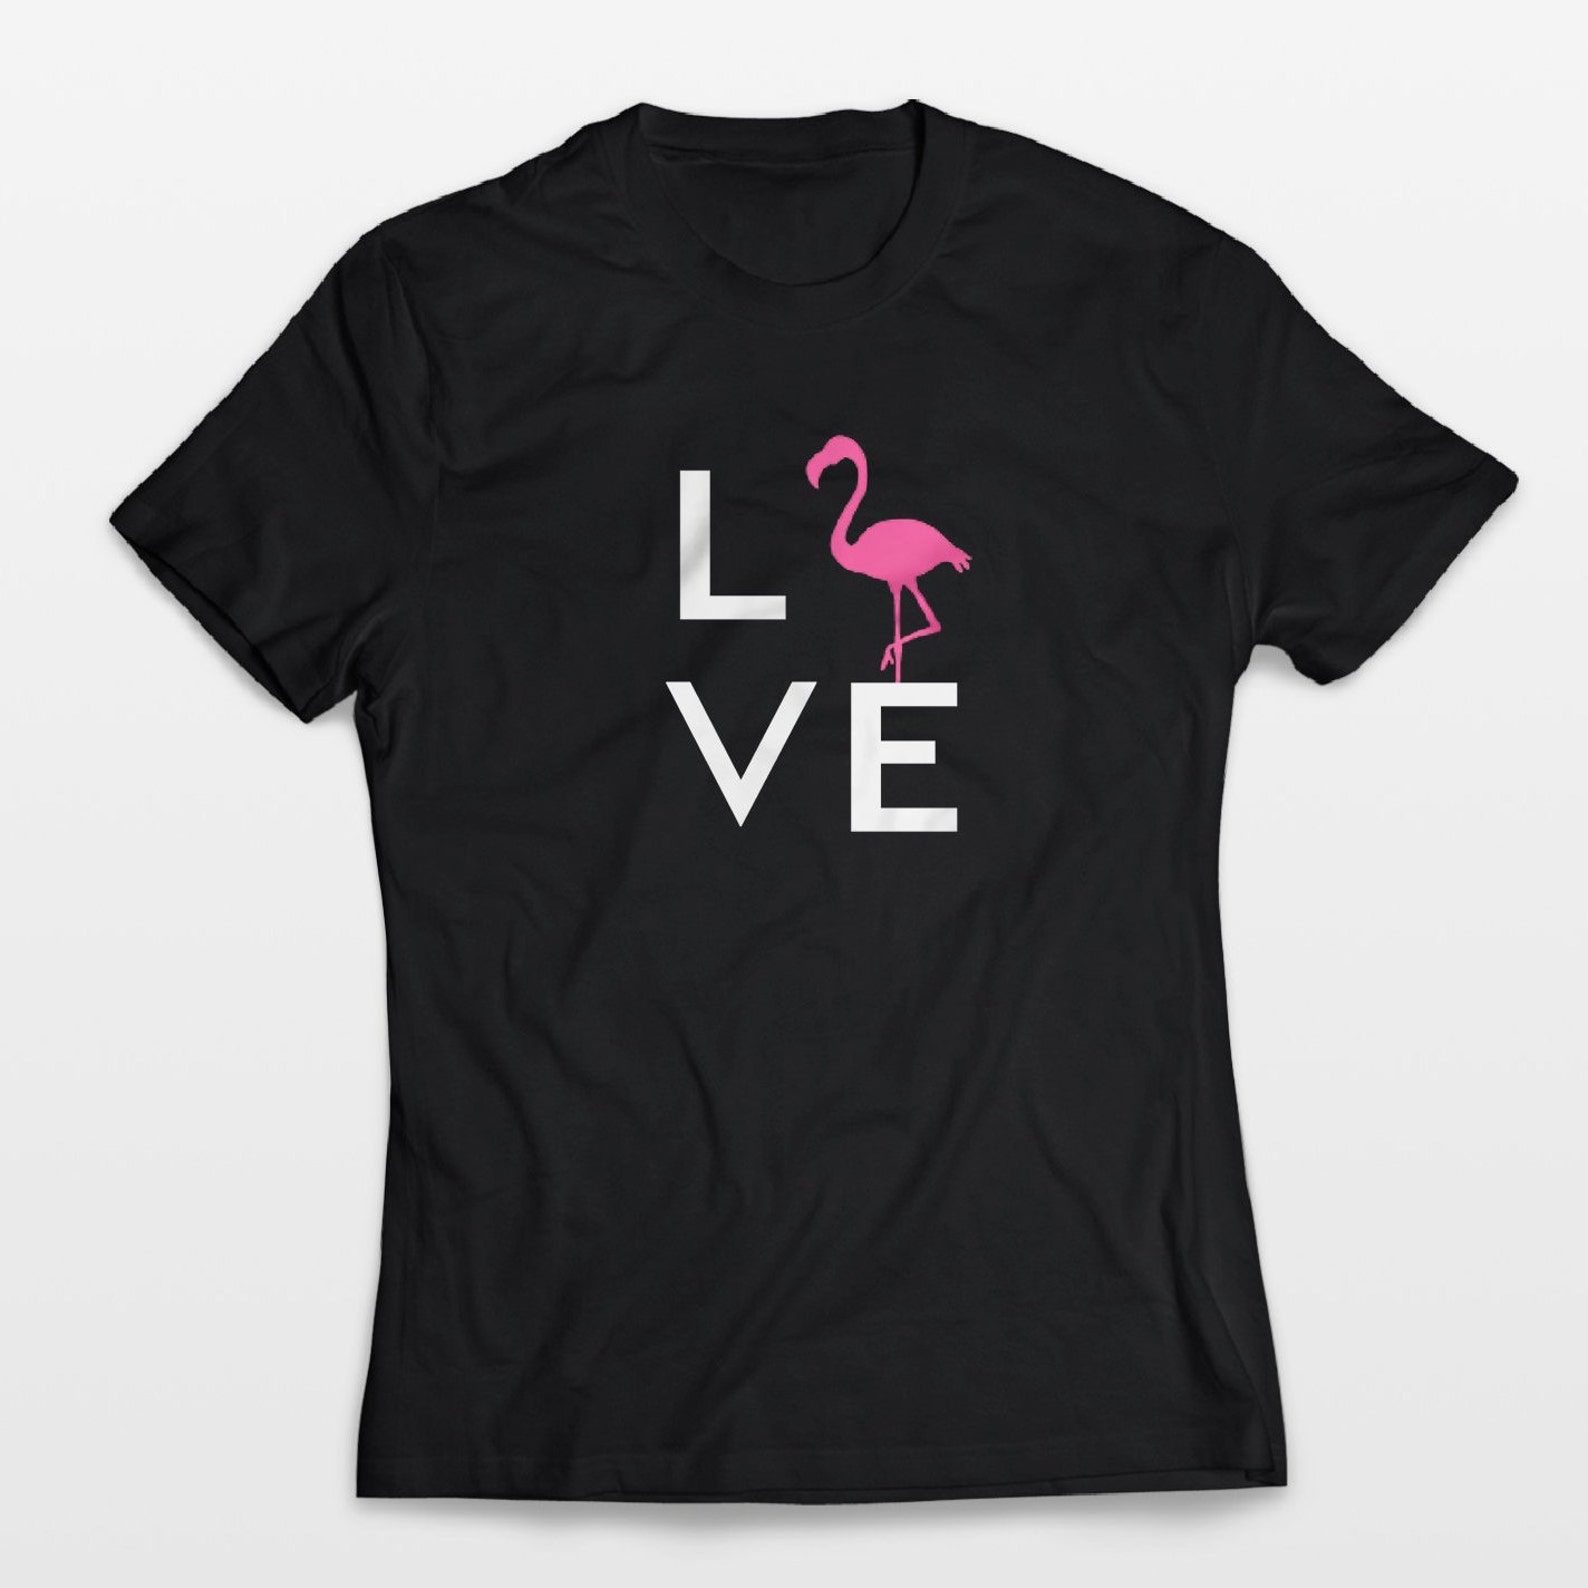 Flamingo Shirt LOVE, Pink Flamingo Shirt, Cute Summer Shirts, Vacation ...